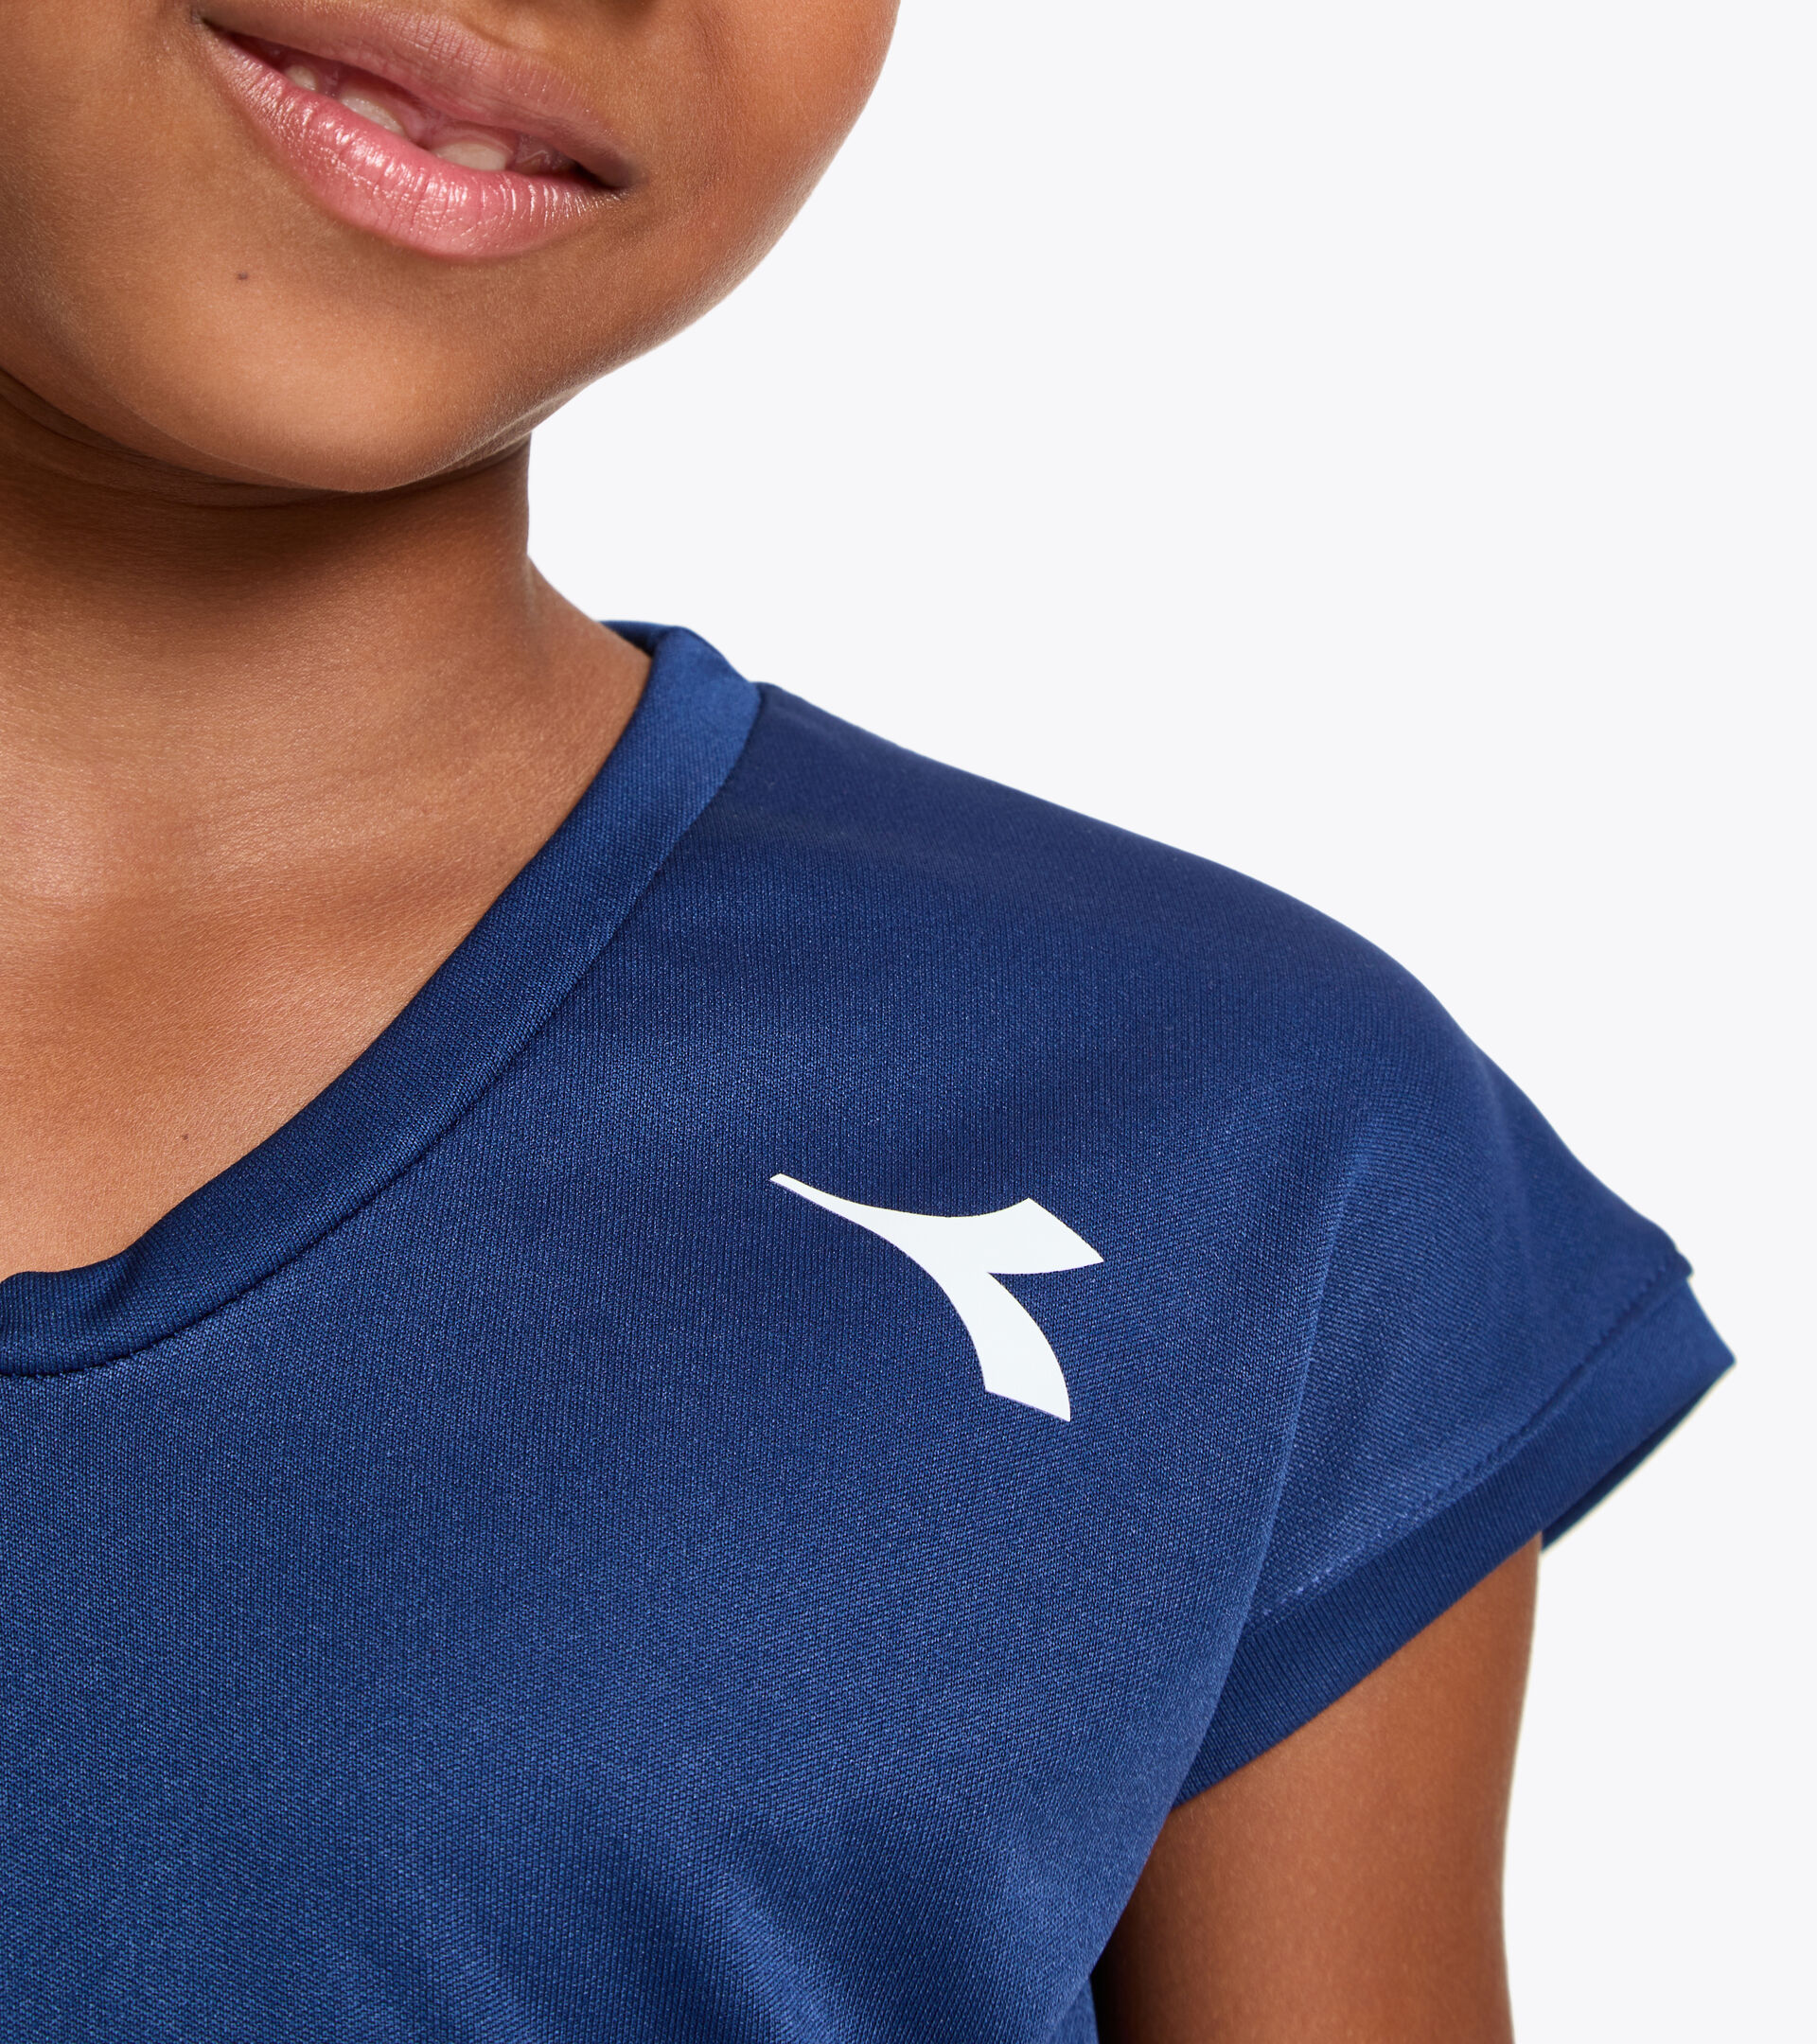 Tennis T-shirt - Junior G. T-SHIRT TEAM SALTIRE NAVY - Diadora